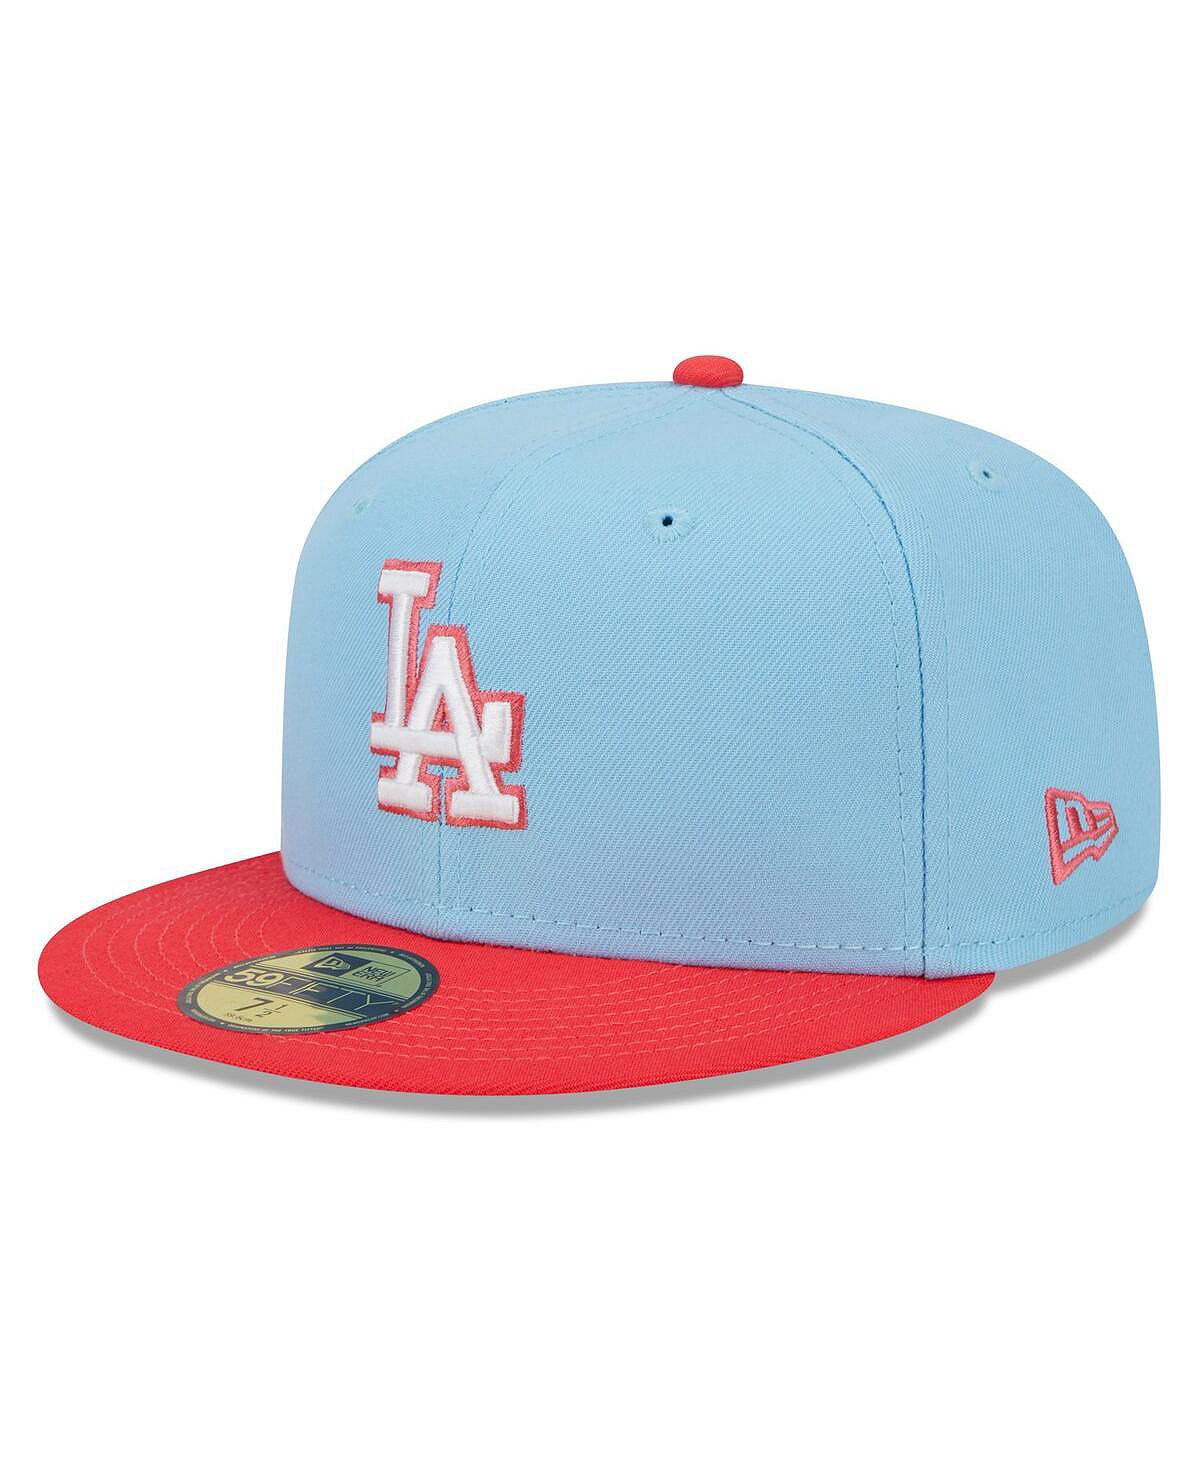 Мужская светло-голубая, красная кепка Los Angeles Dodgers Spring Color, двухцветная 59FIFTY. New Era